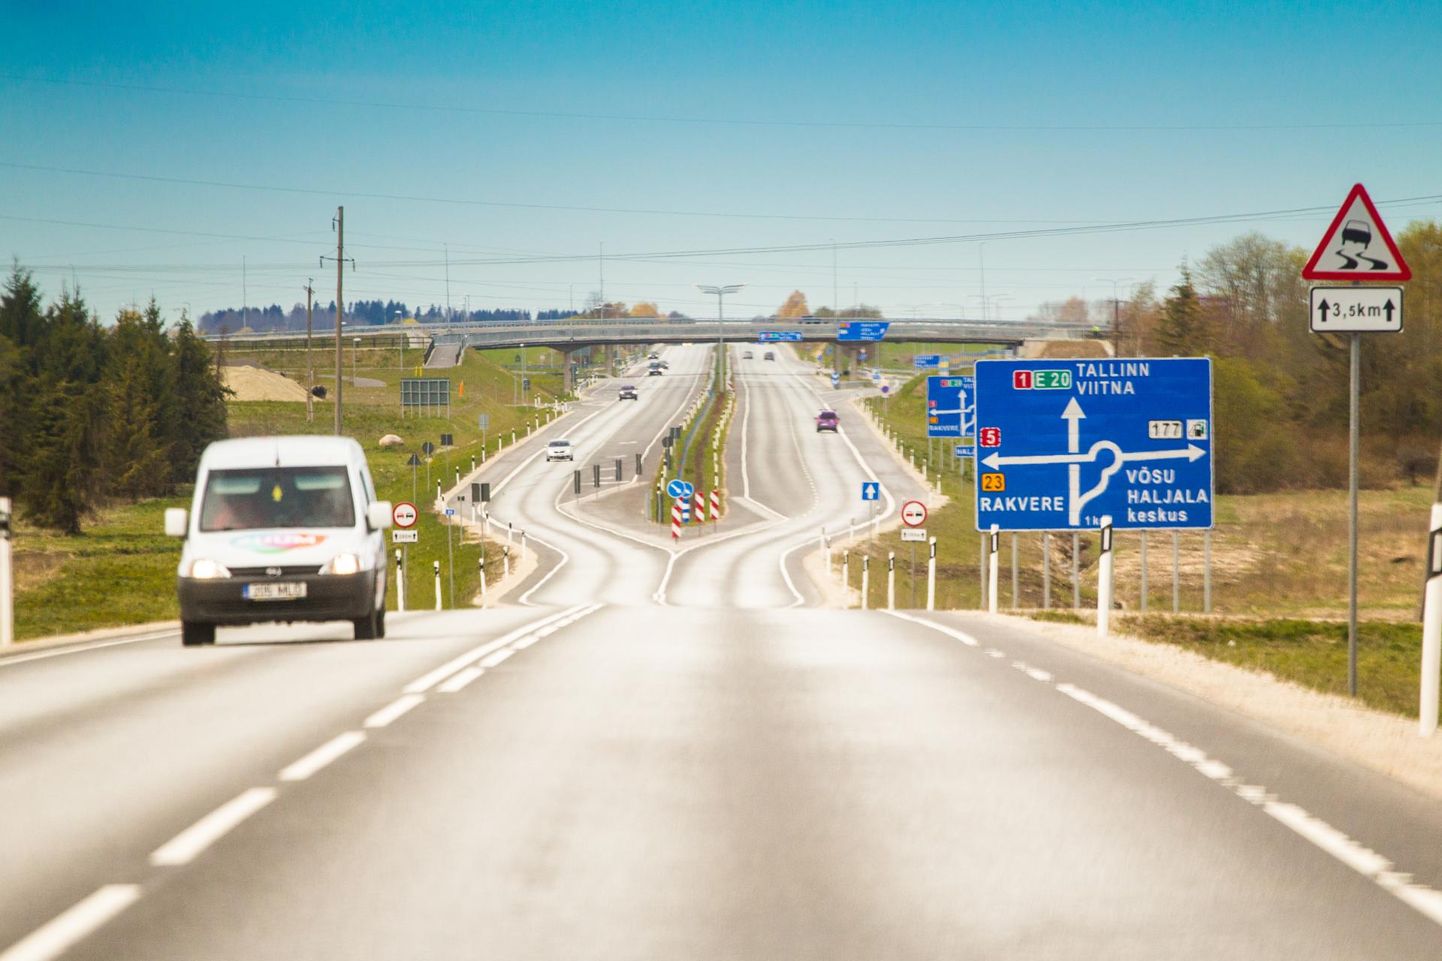 AS Eesti Teed работает в основном на эстонском рынке и занимается строительством и обслуживанием дорог и сооружений, а также производством необходимых для строительства материалов.